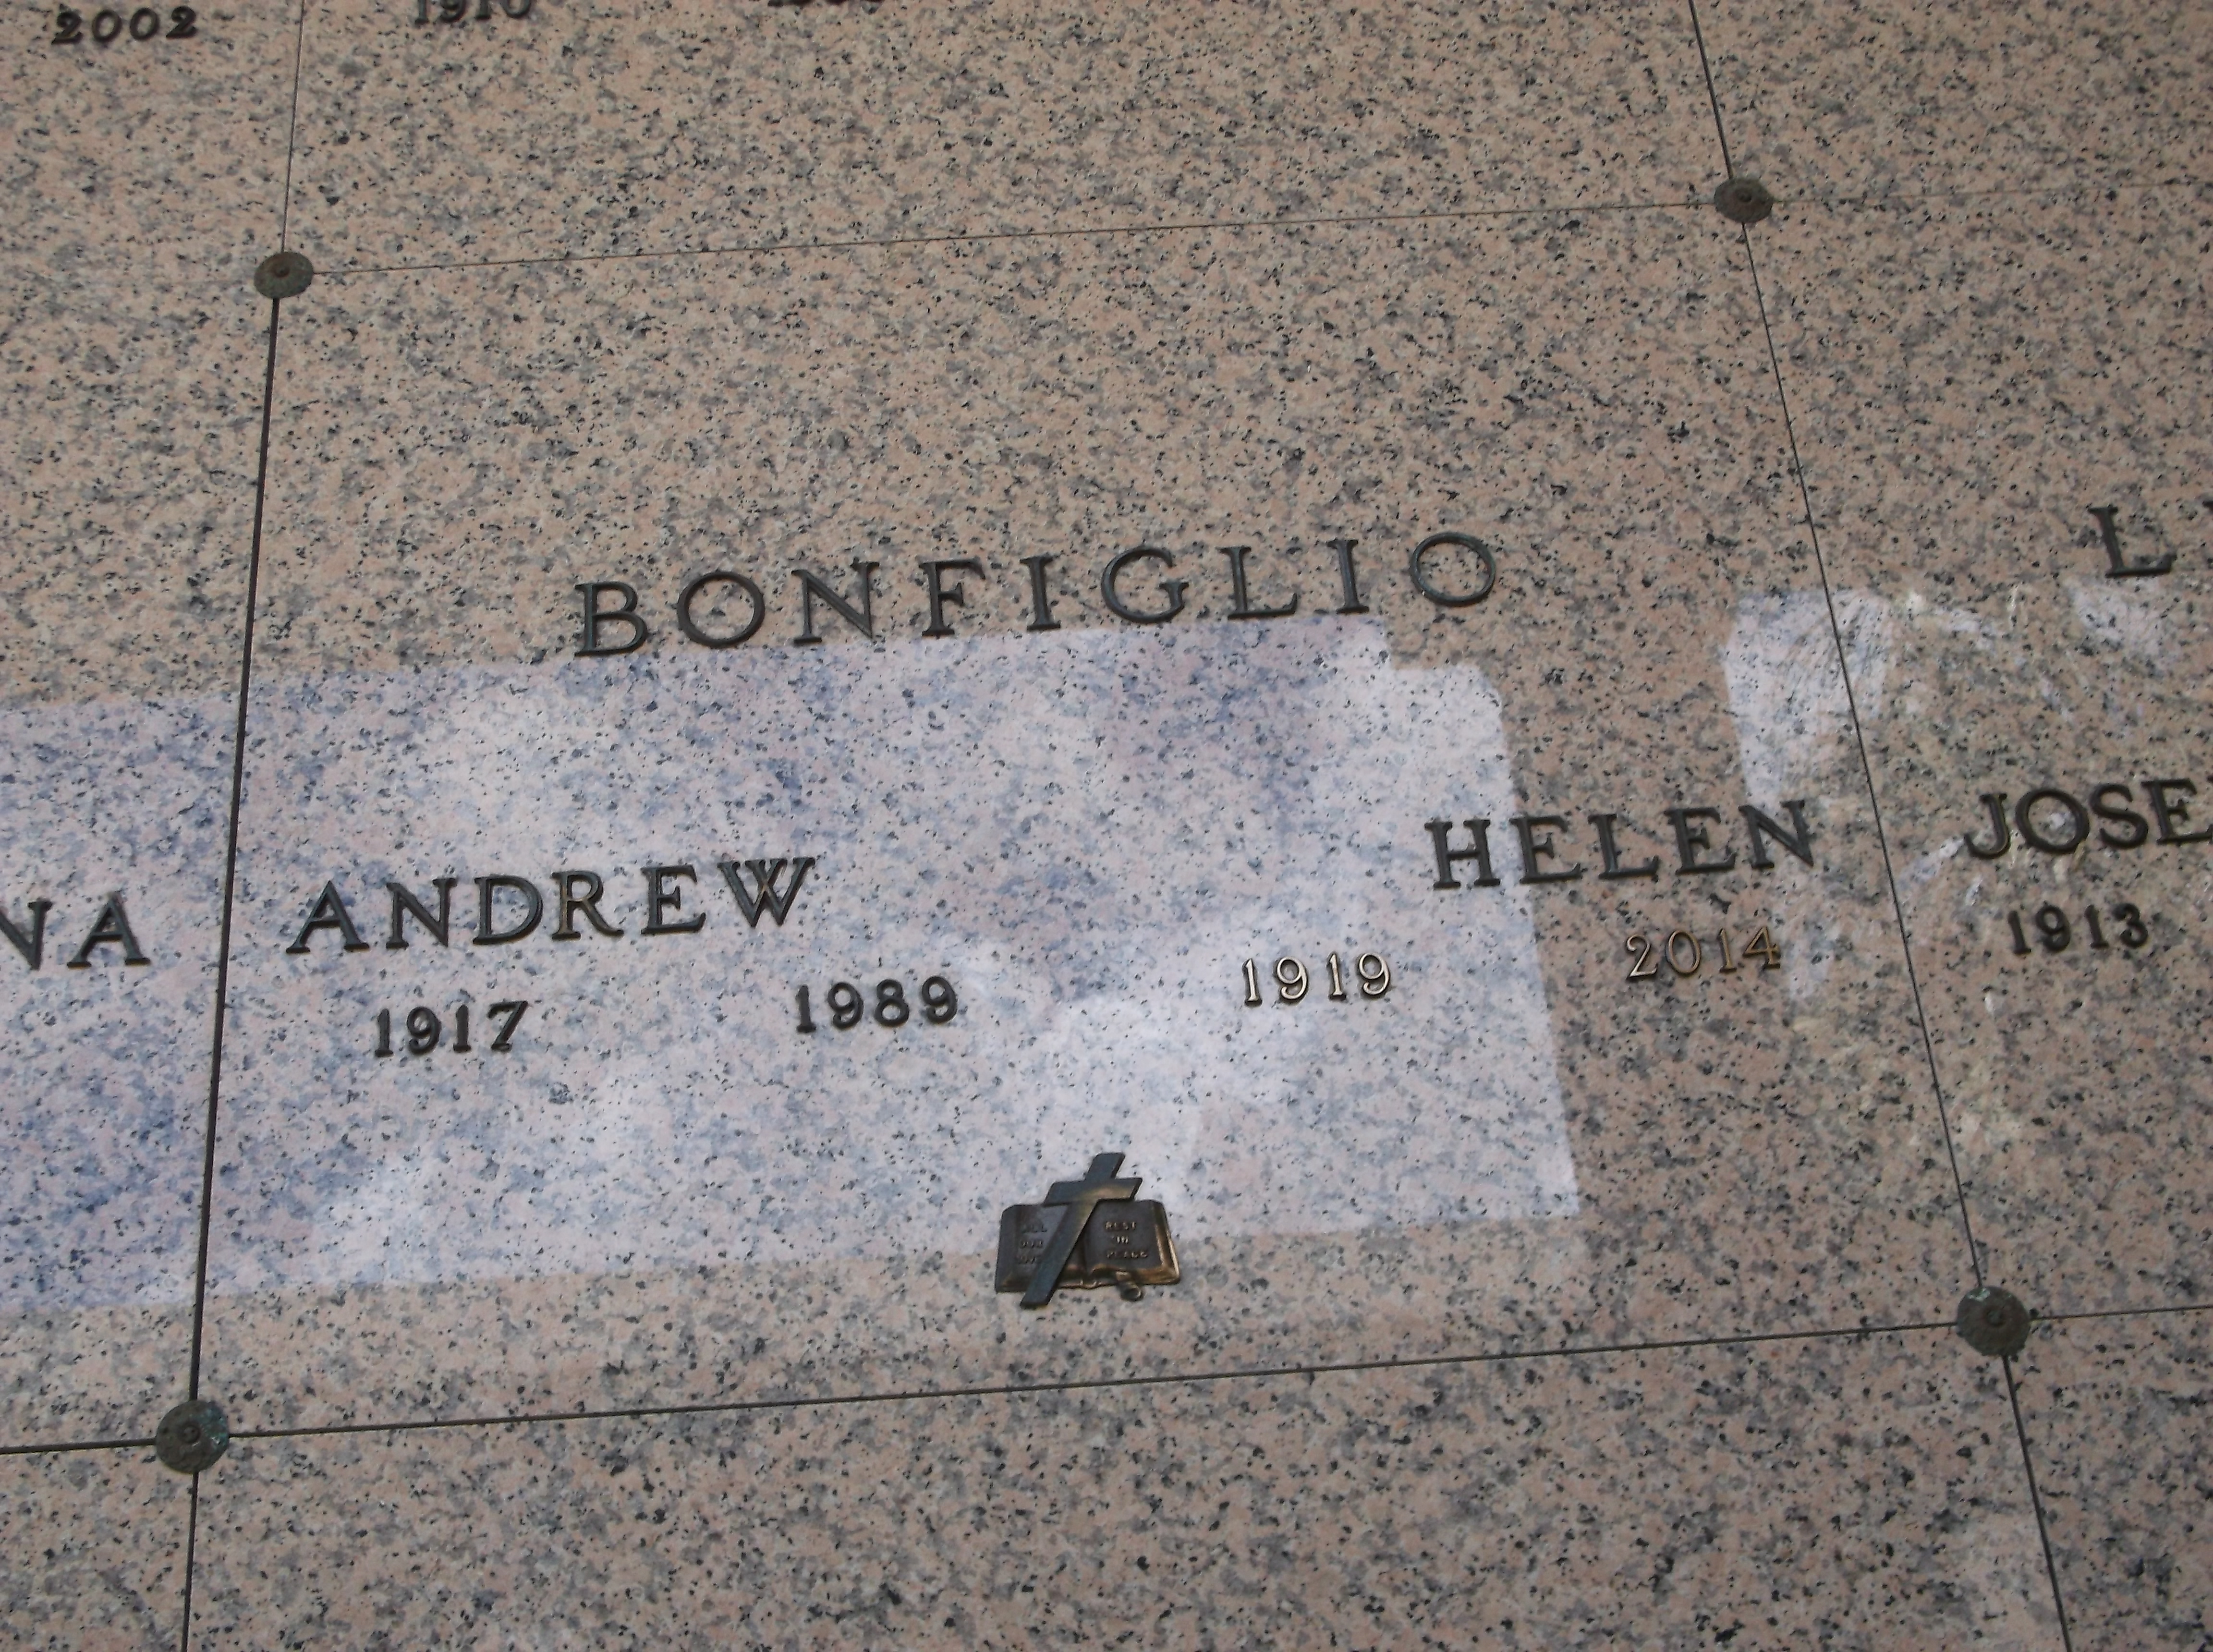 Andrew Bonfiglio